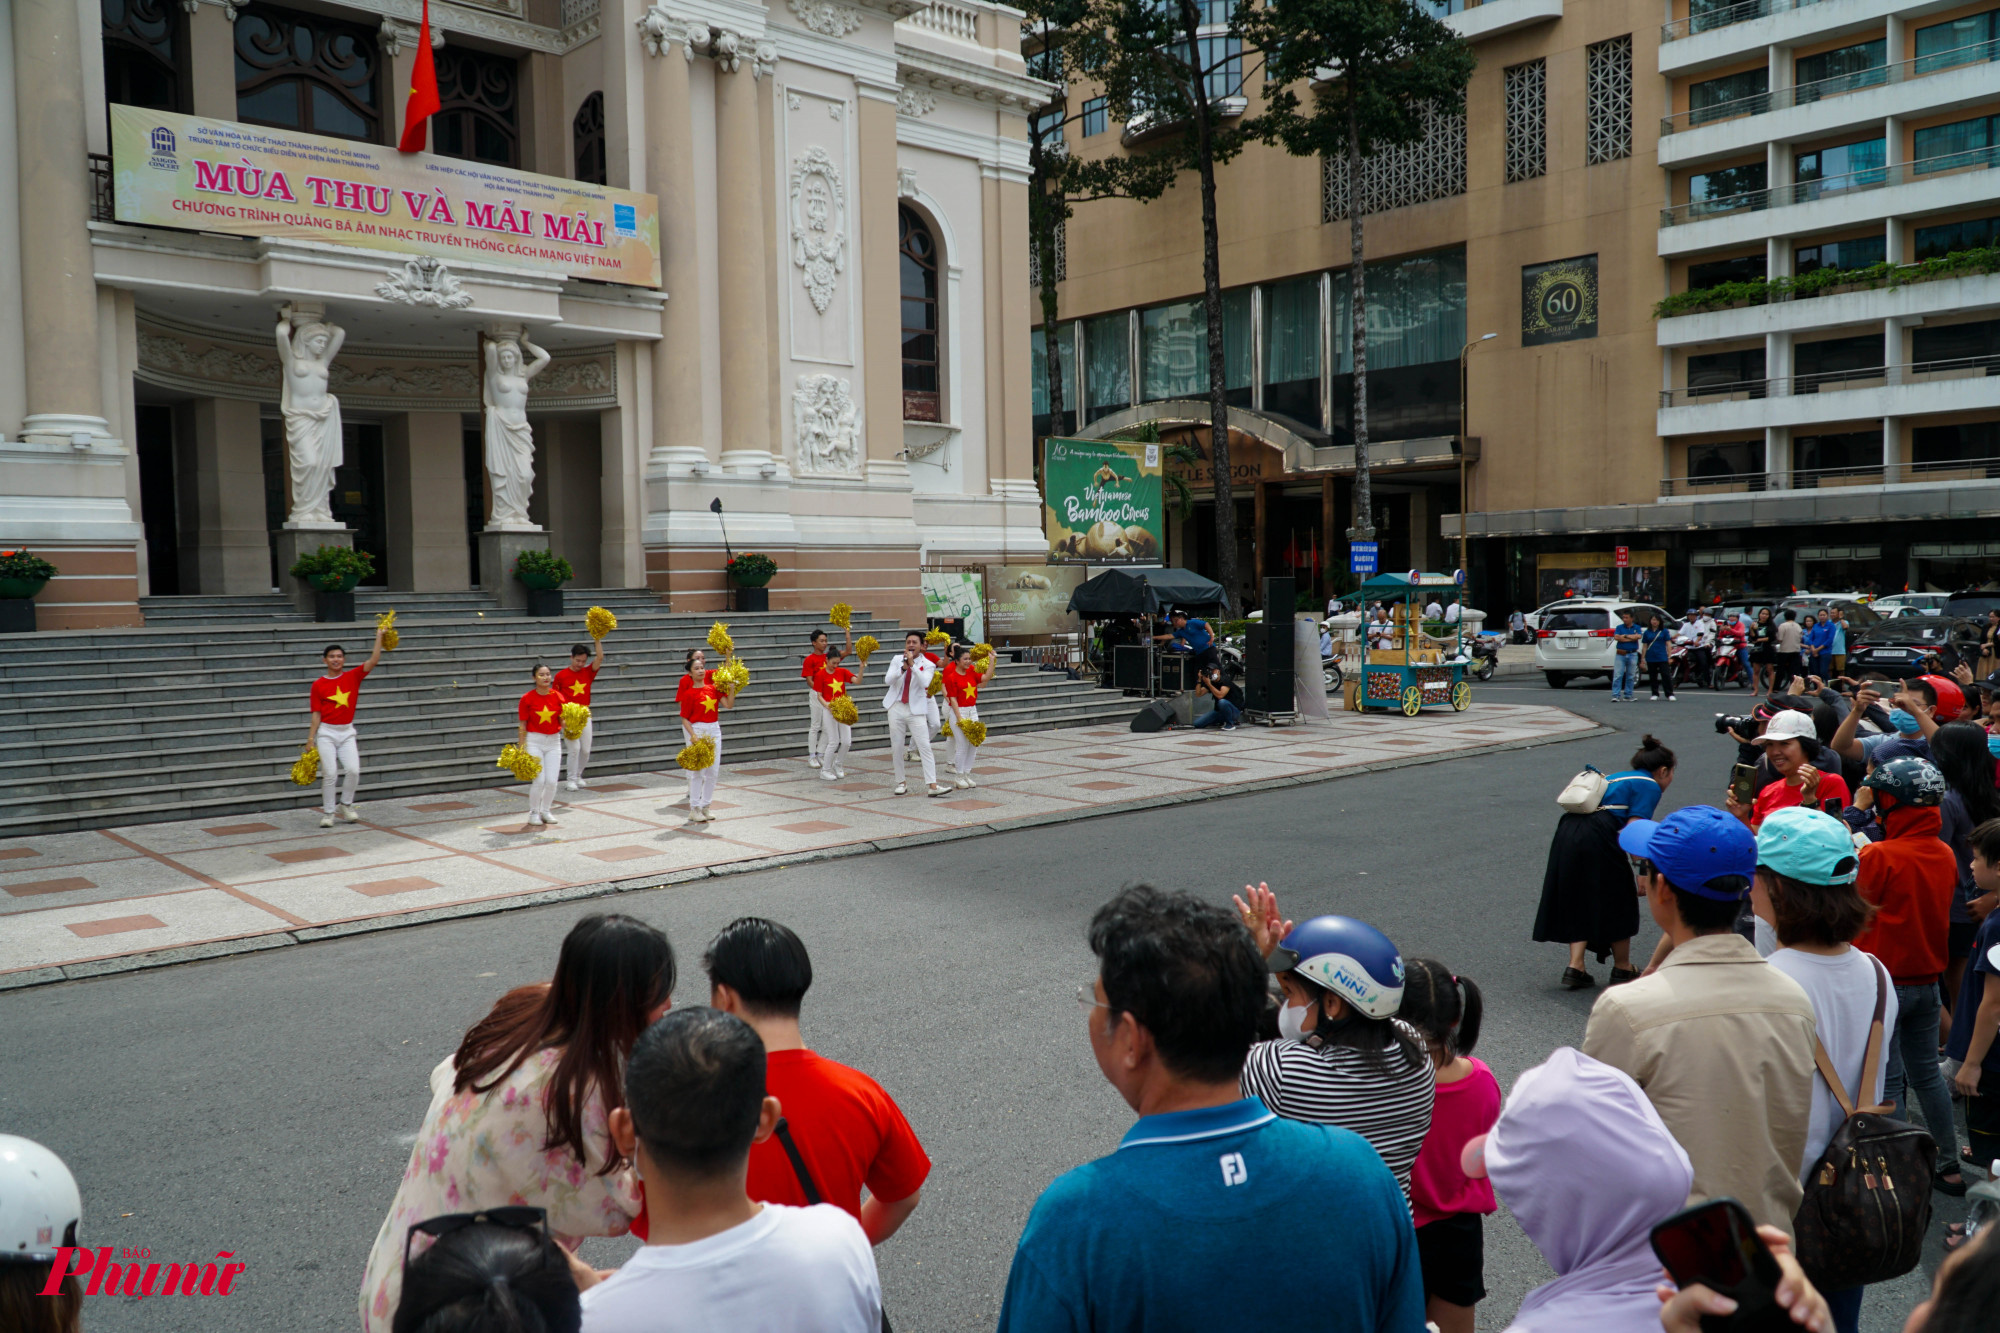 Khu vực nhà hát Thành phố, các ca sĩ đang trình diễn những ca khúc hào hùng cách mạng, chủ đề xây dựng thành phố, tình yêu quê hương và con người Việt Nam